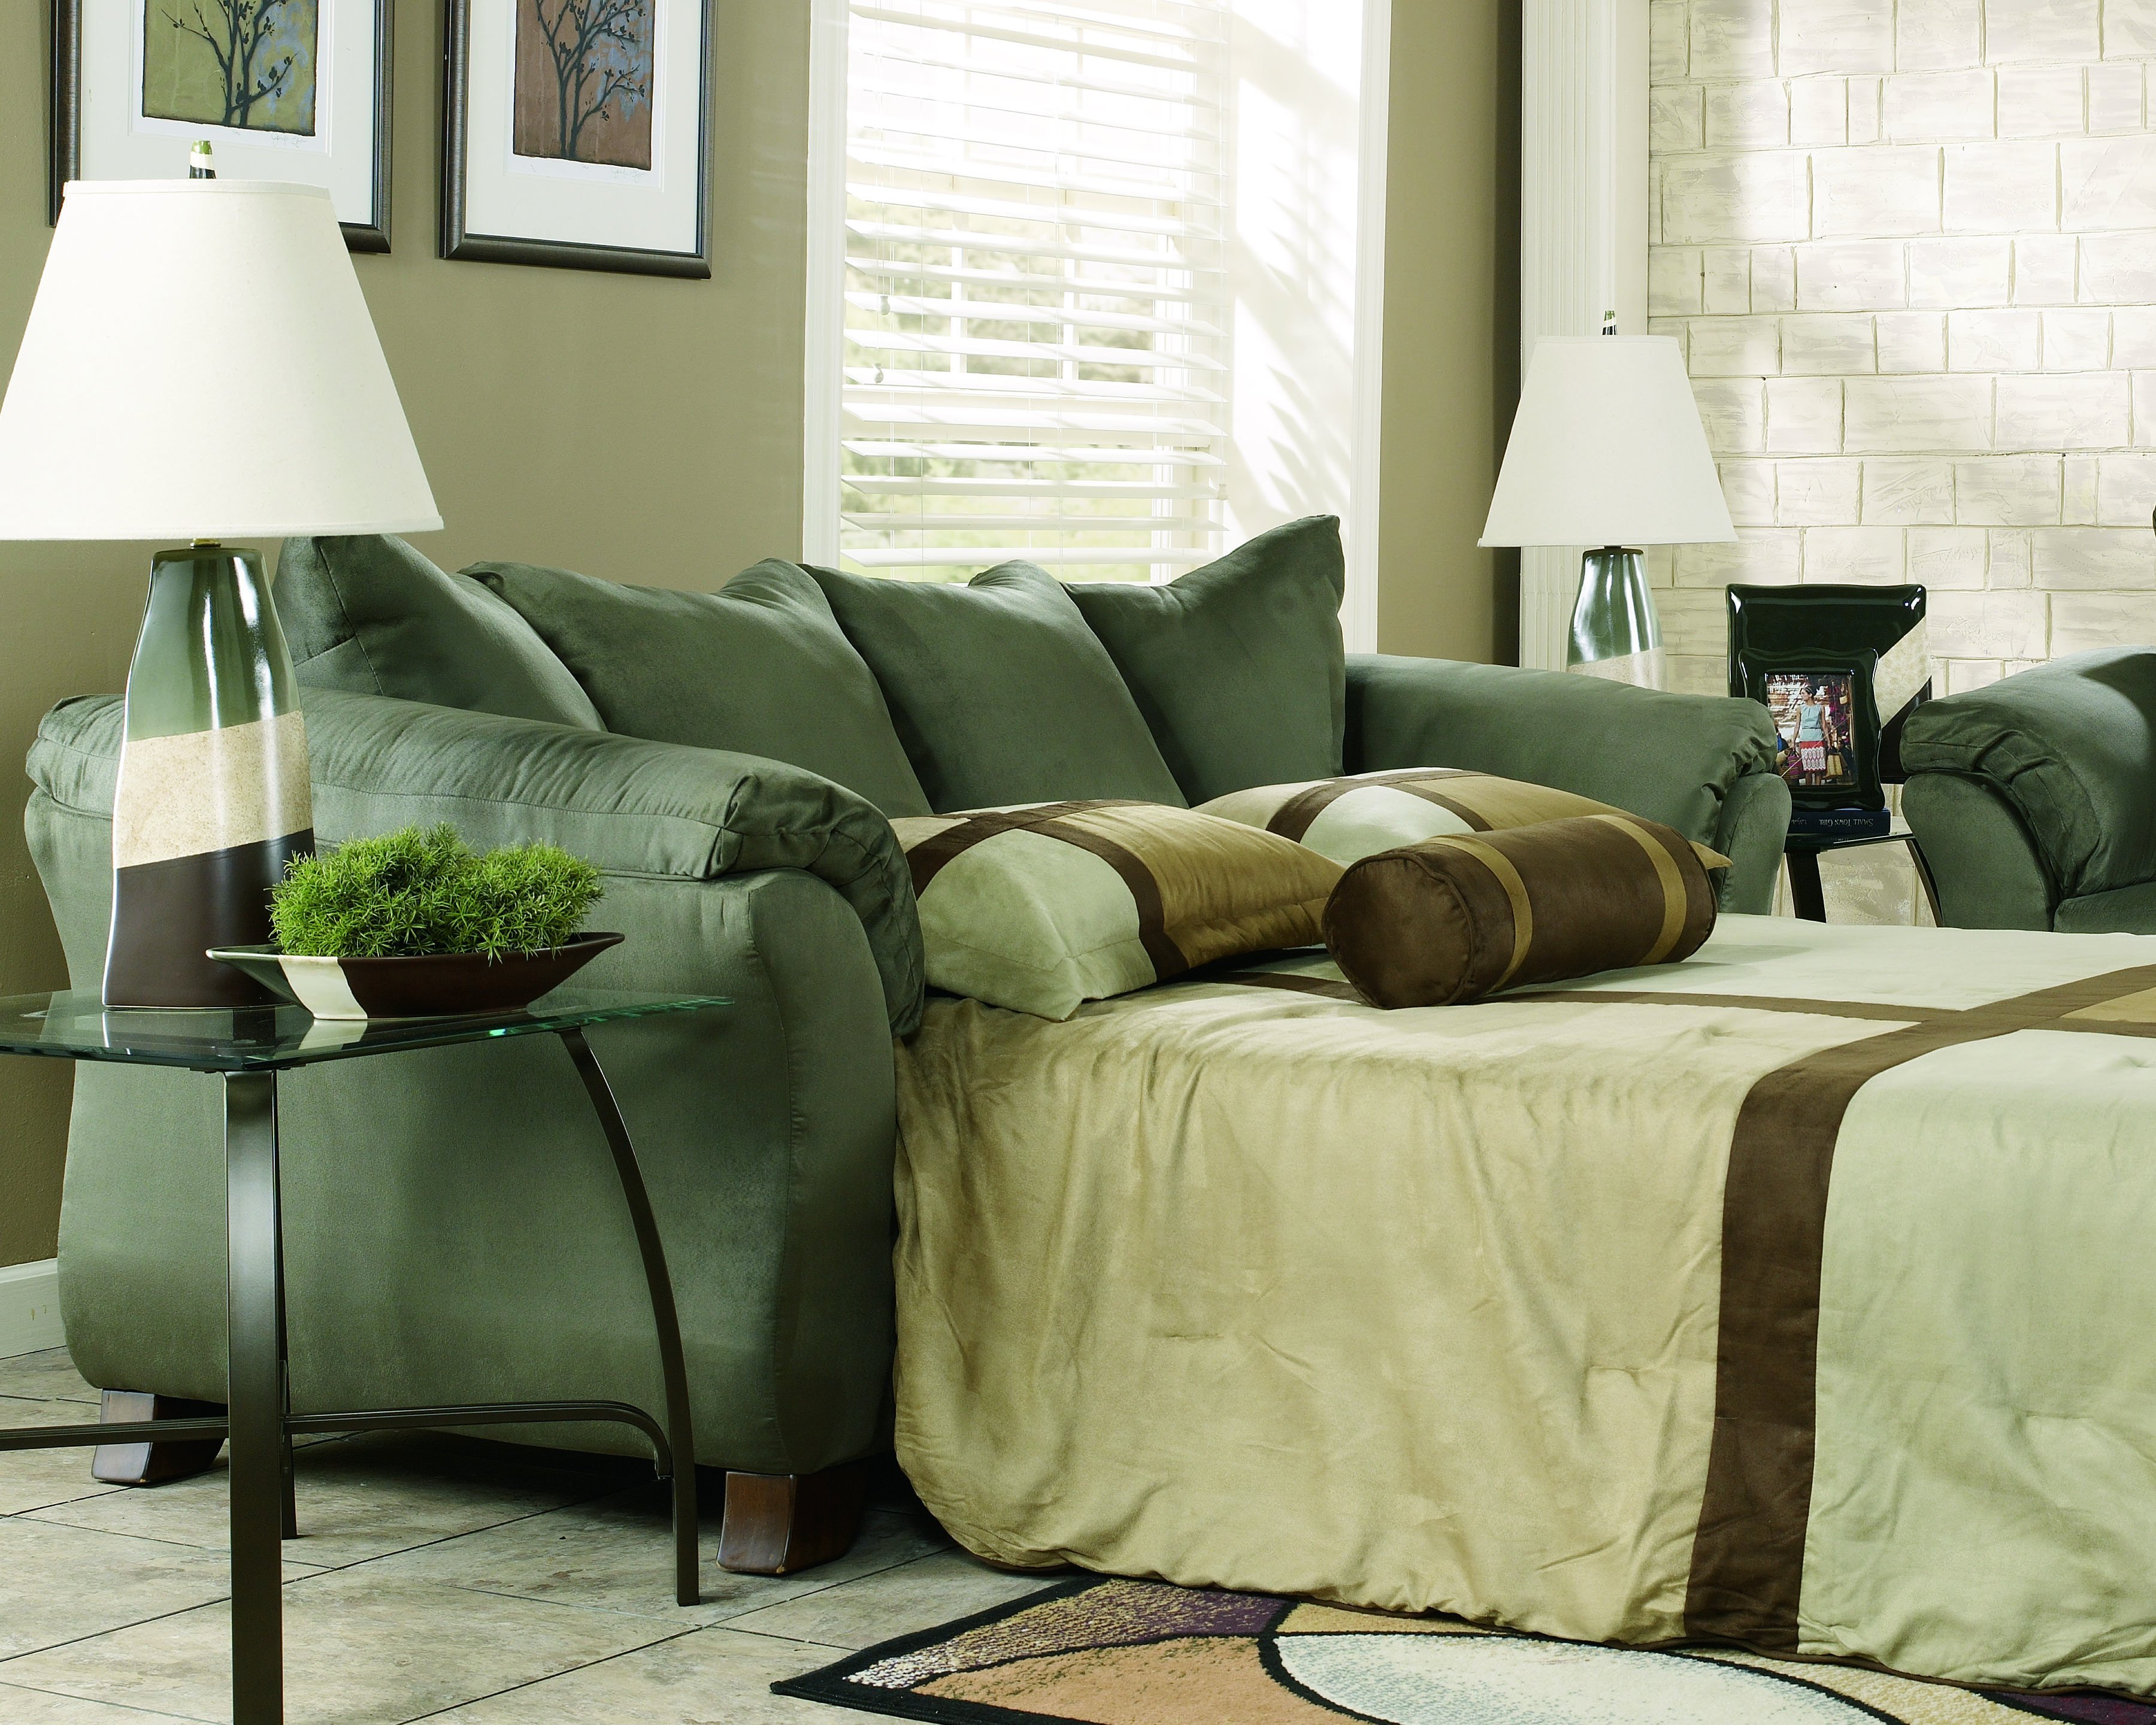 Болотный интерьер. Оливковый диван в интерьере. Диван болотного цвета. Диван болотного цвета в интерьере гостиной. Сочетание болотного цвета в интерьере.